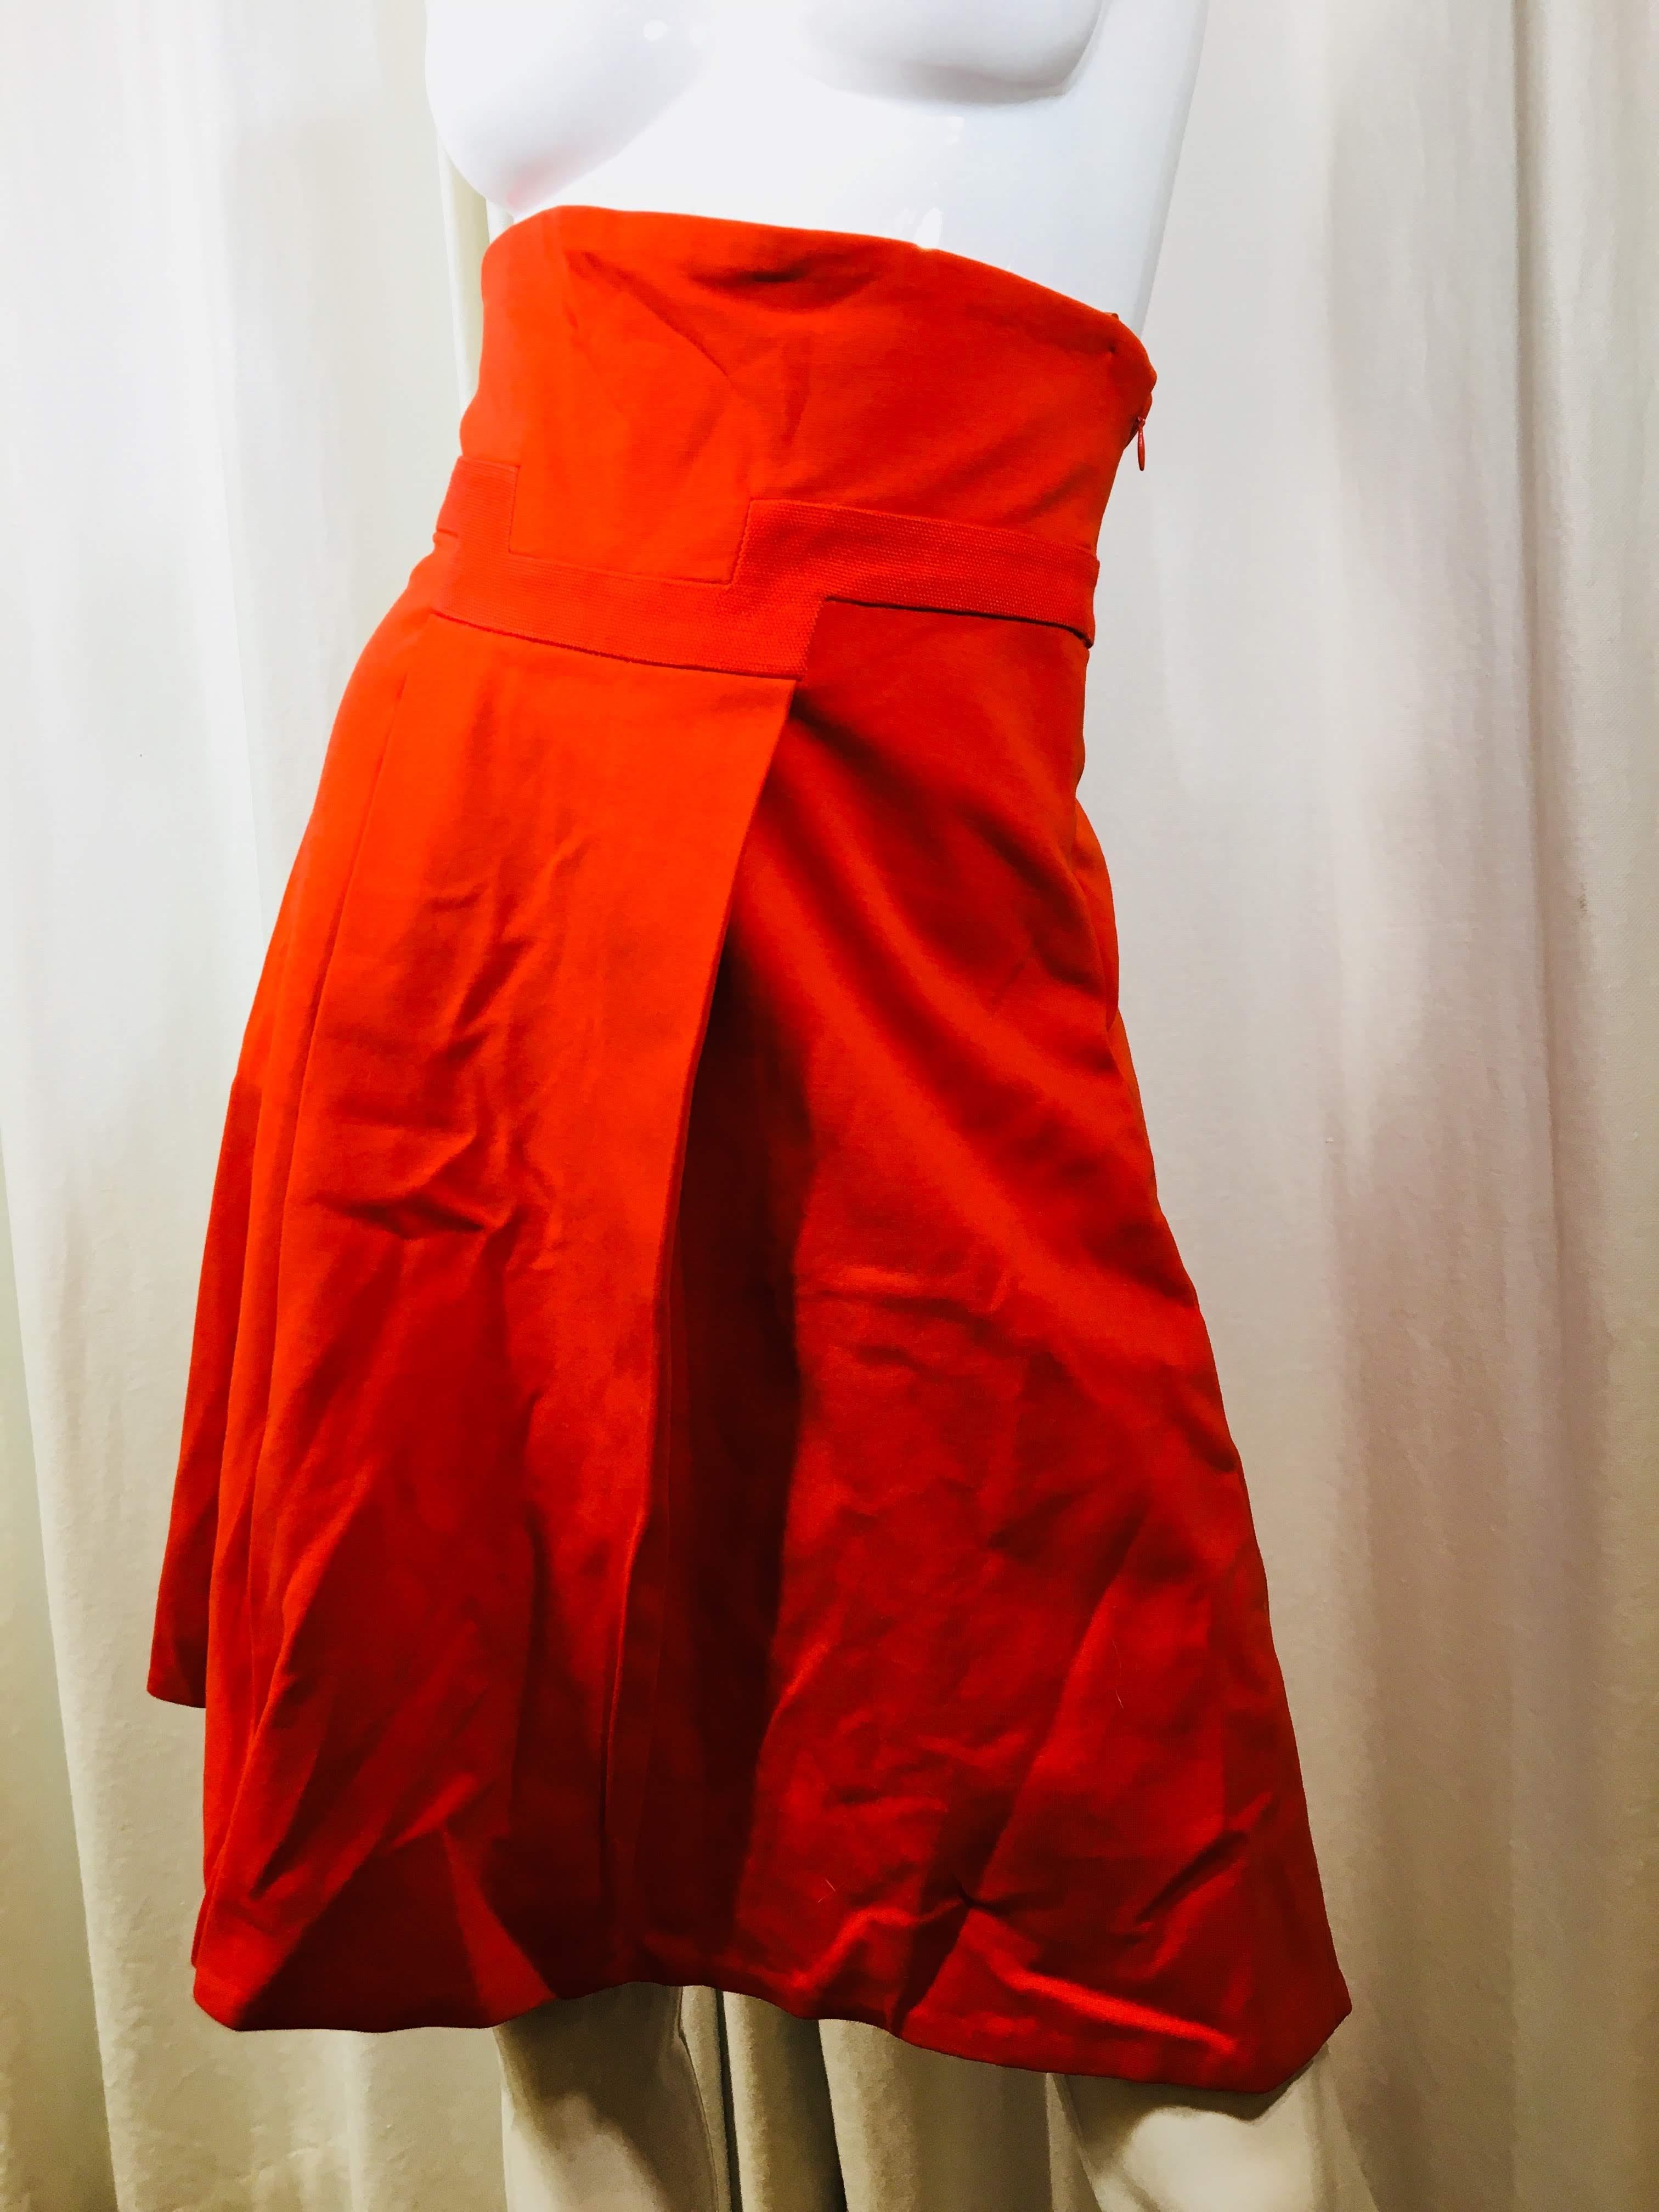 Red Diane vonFurstenberg Skirt